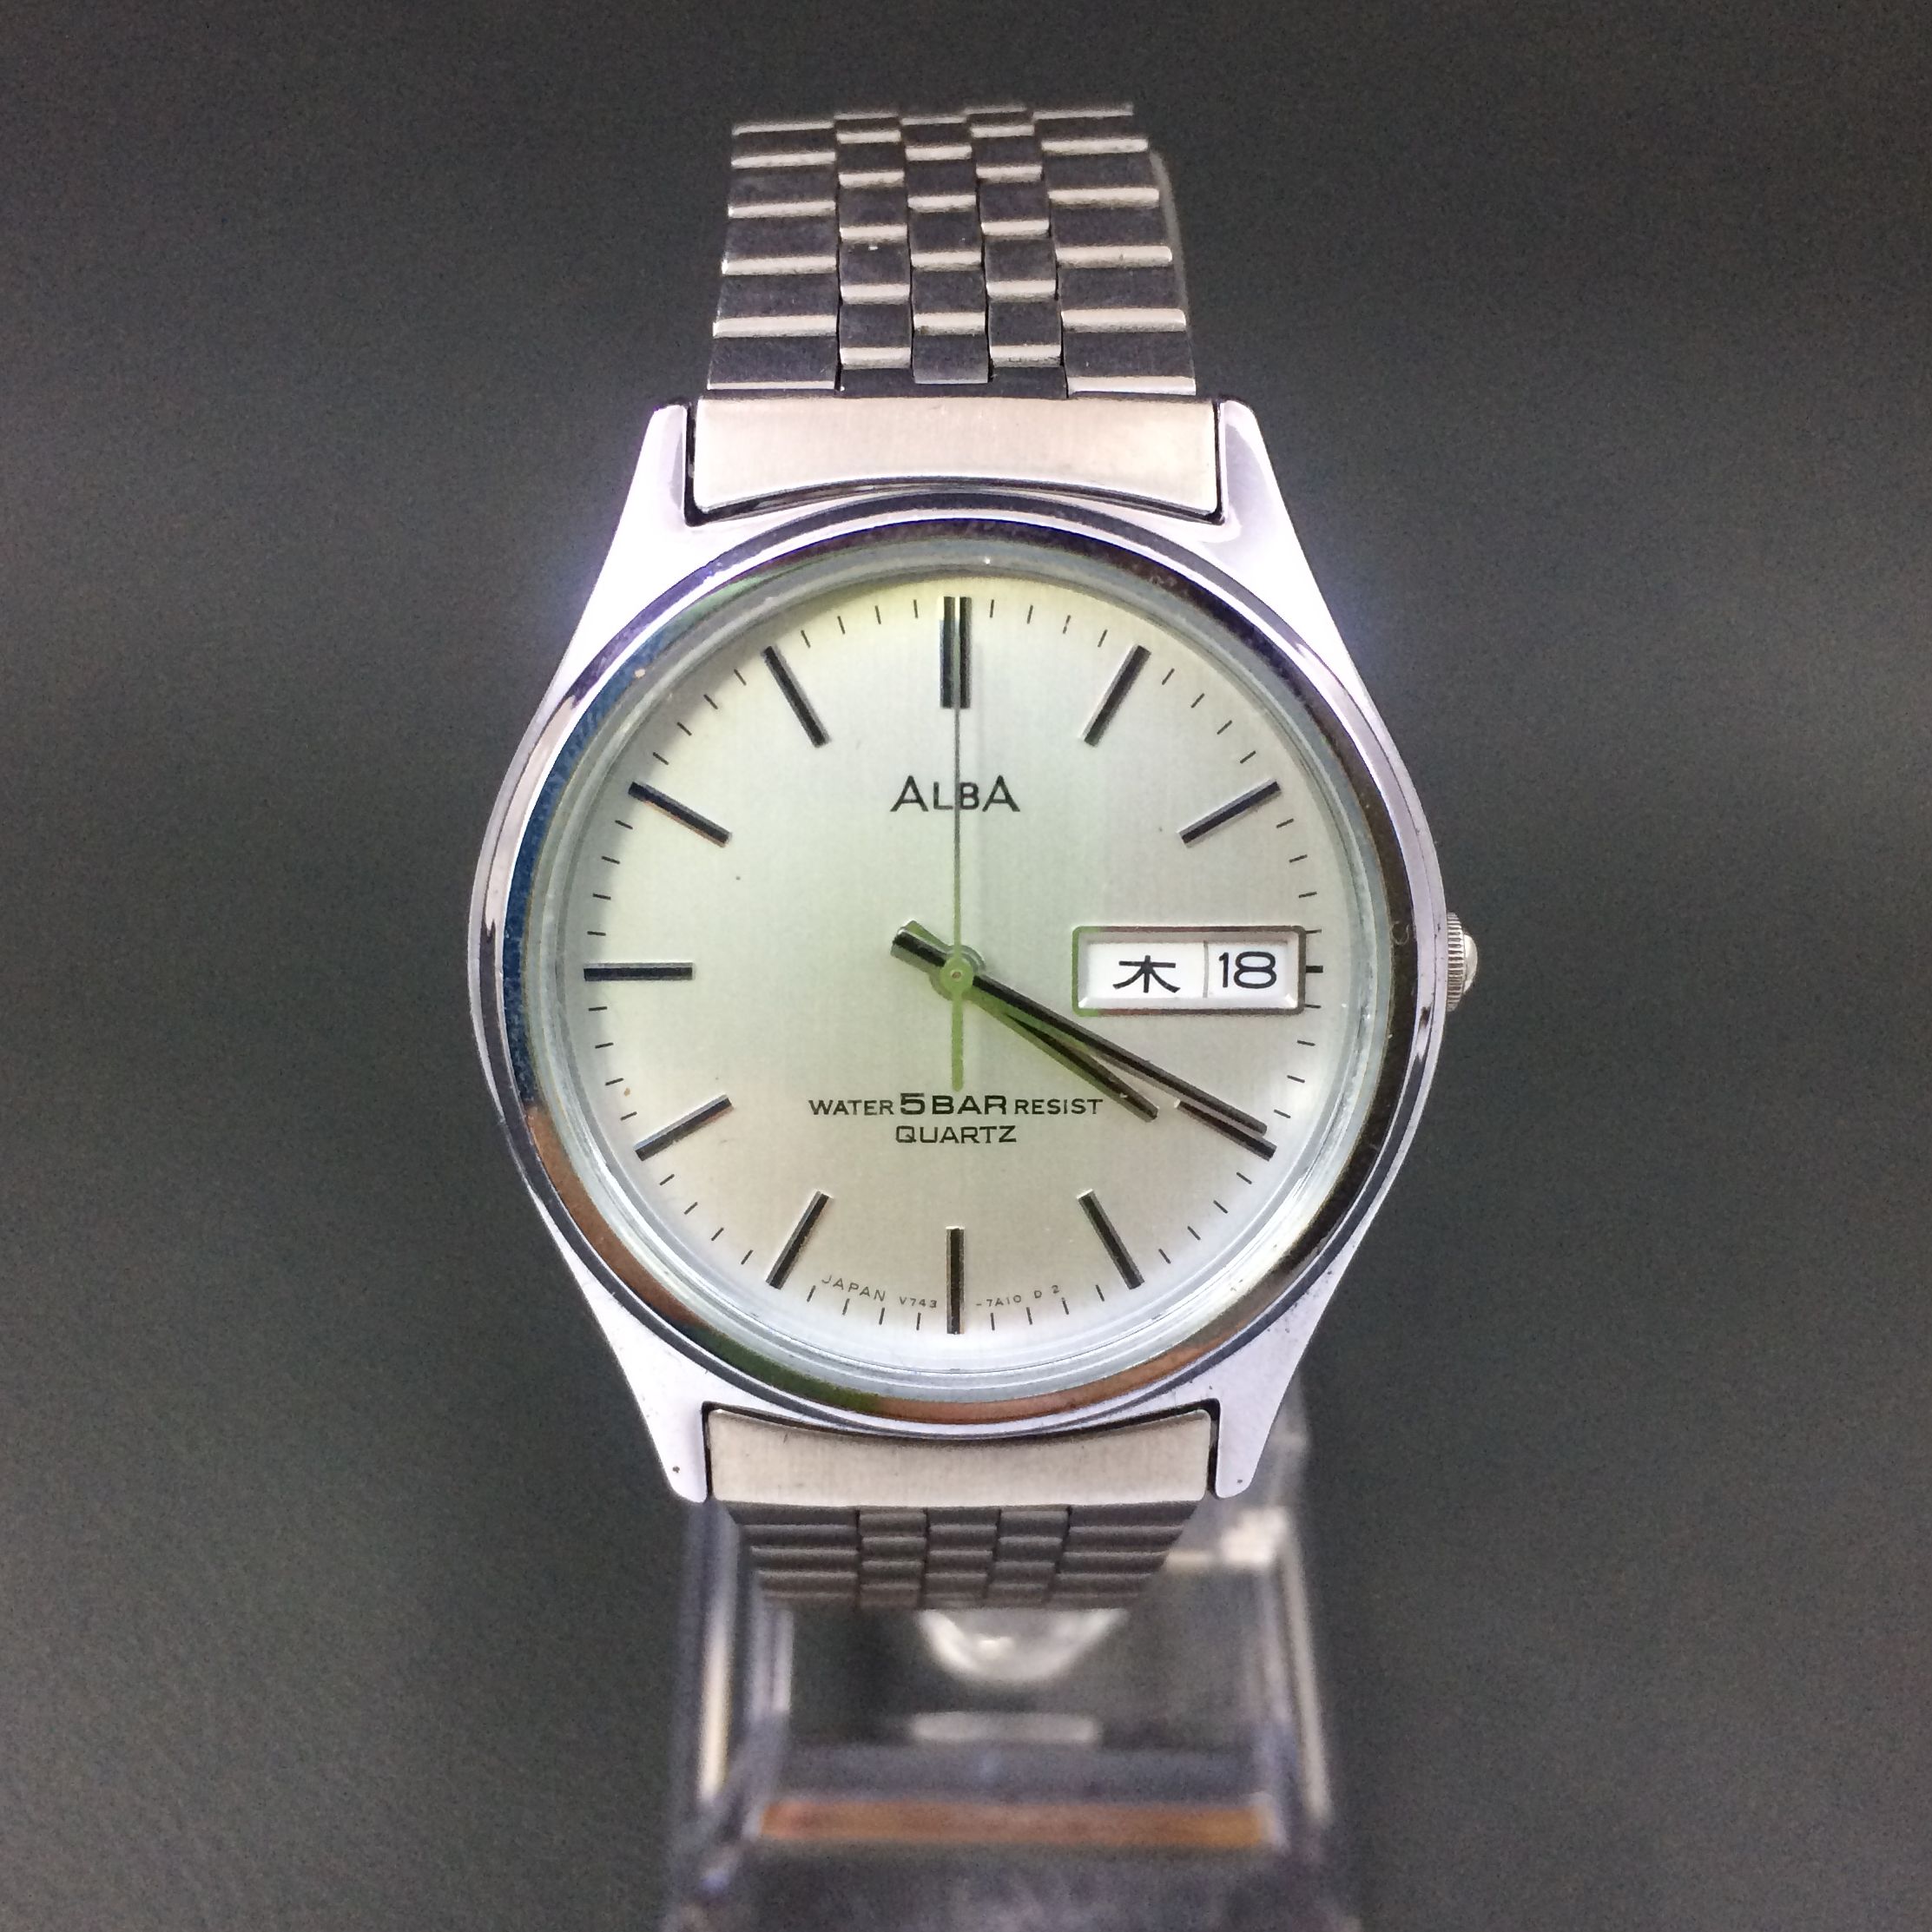 Đồng hồ Seiko Alba Vient V33f-5A10 chính hãng (2hand)